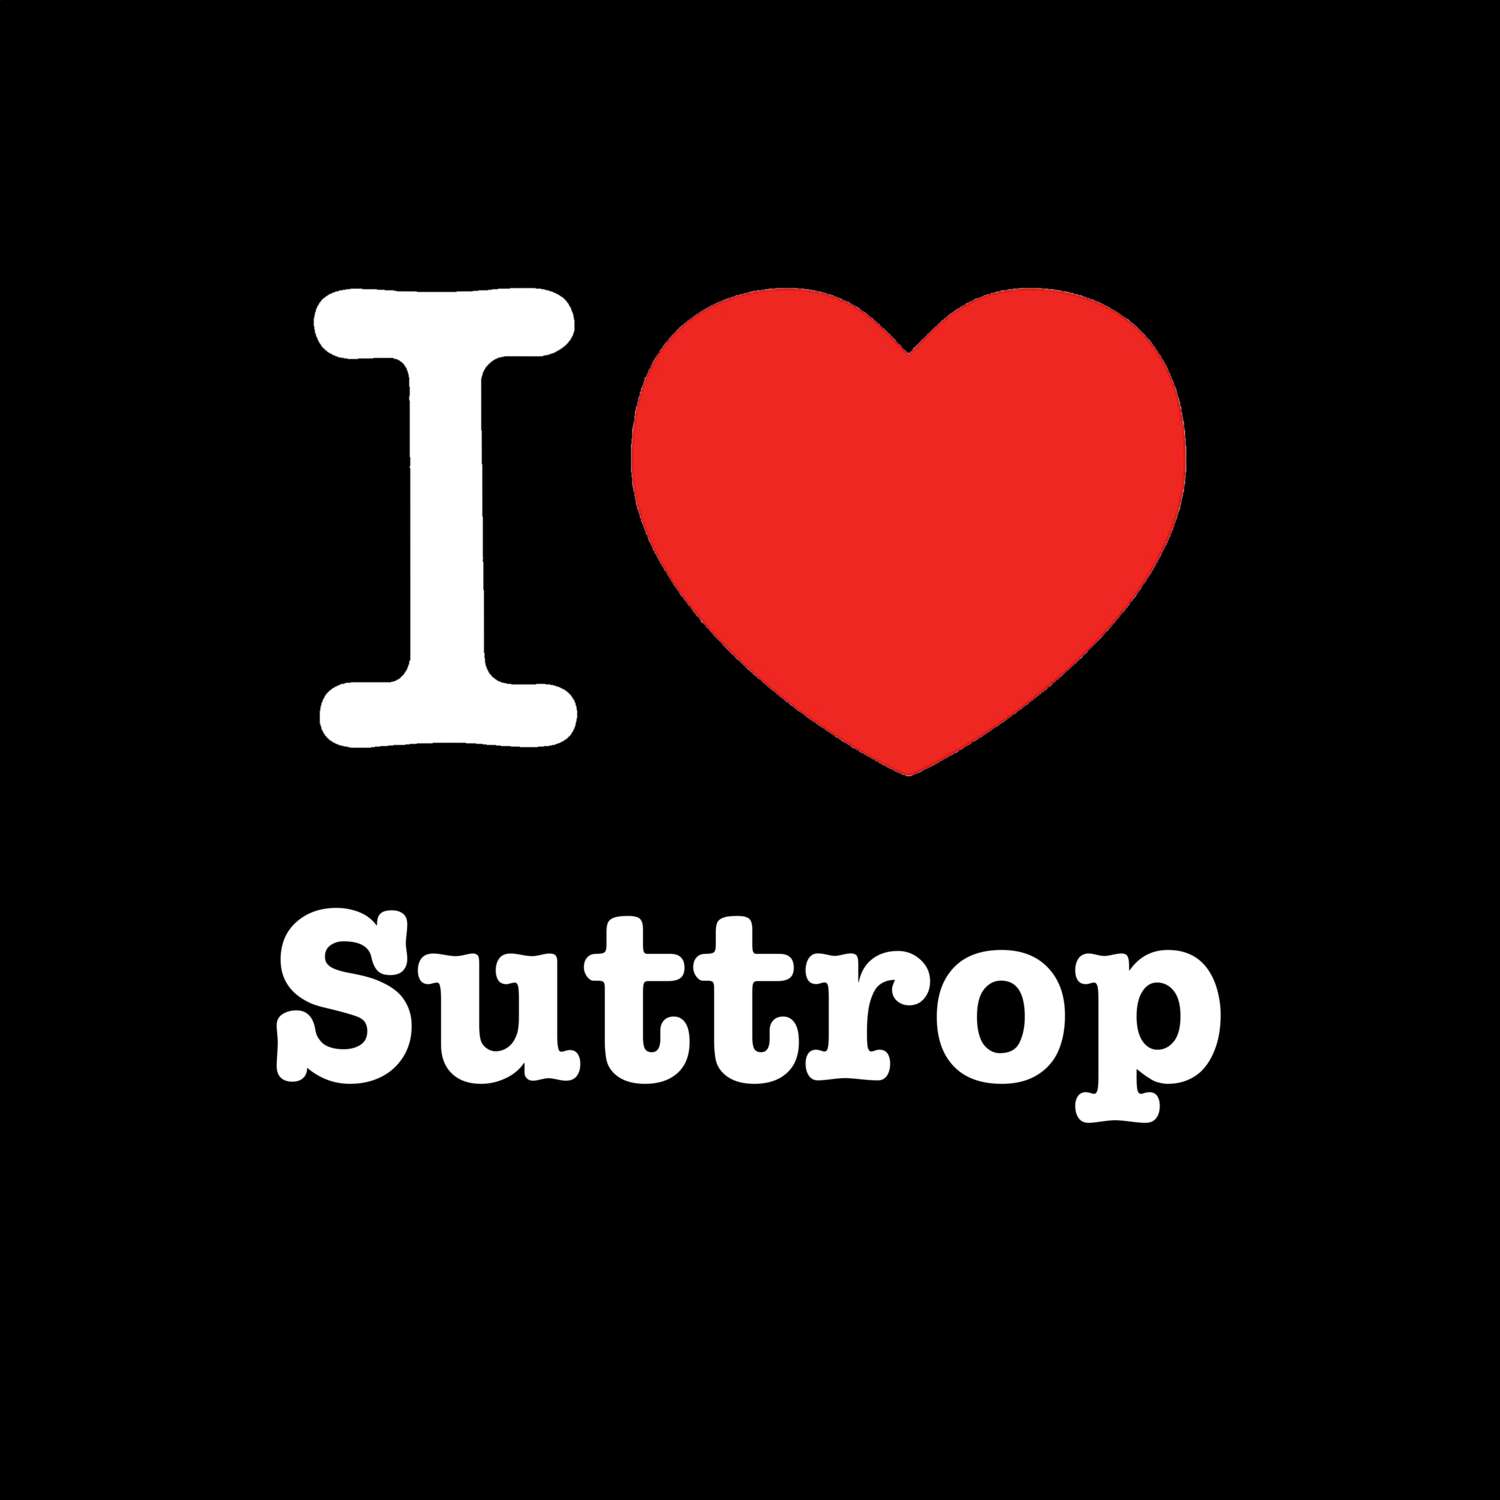 Suttrop T-Shirt »I love«